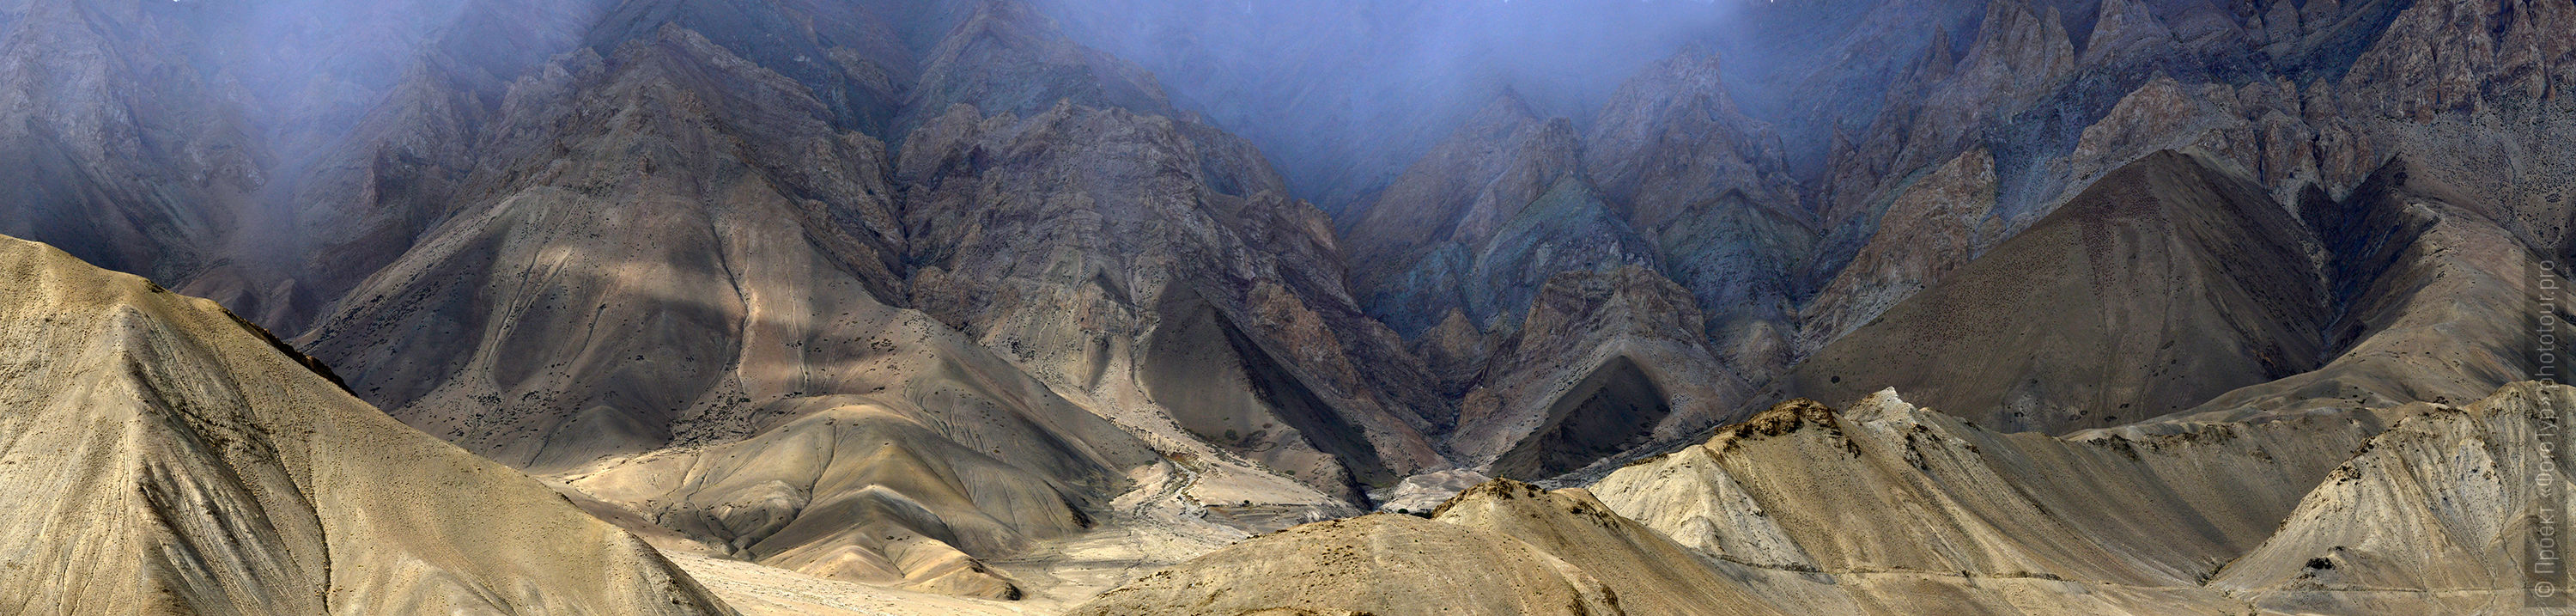 Верховья долины Ламаюру, перевал Фоту Ла, Ладакх, Гималаи, Северная Индия.